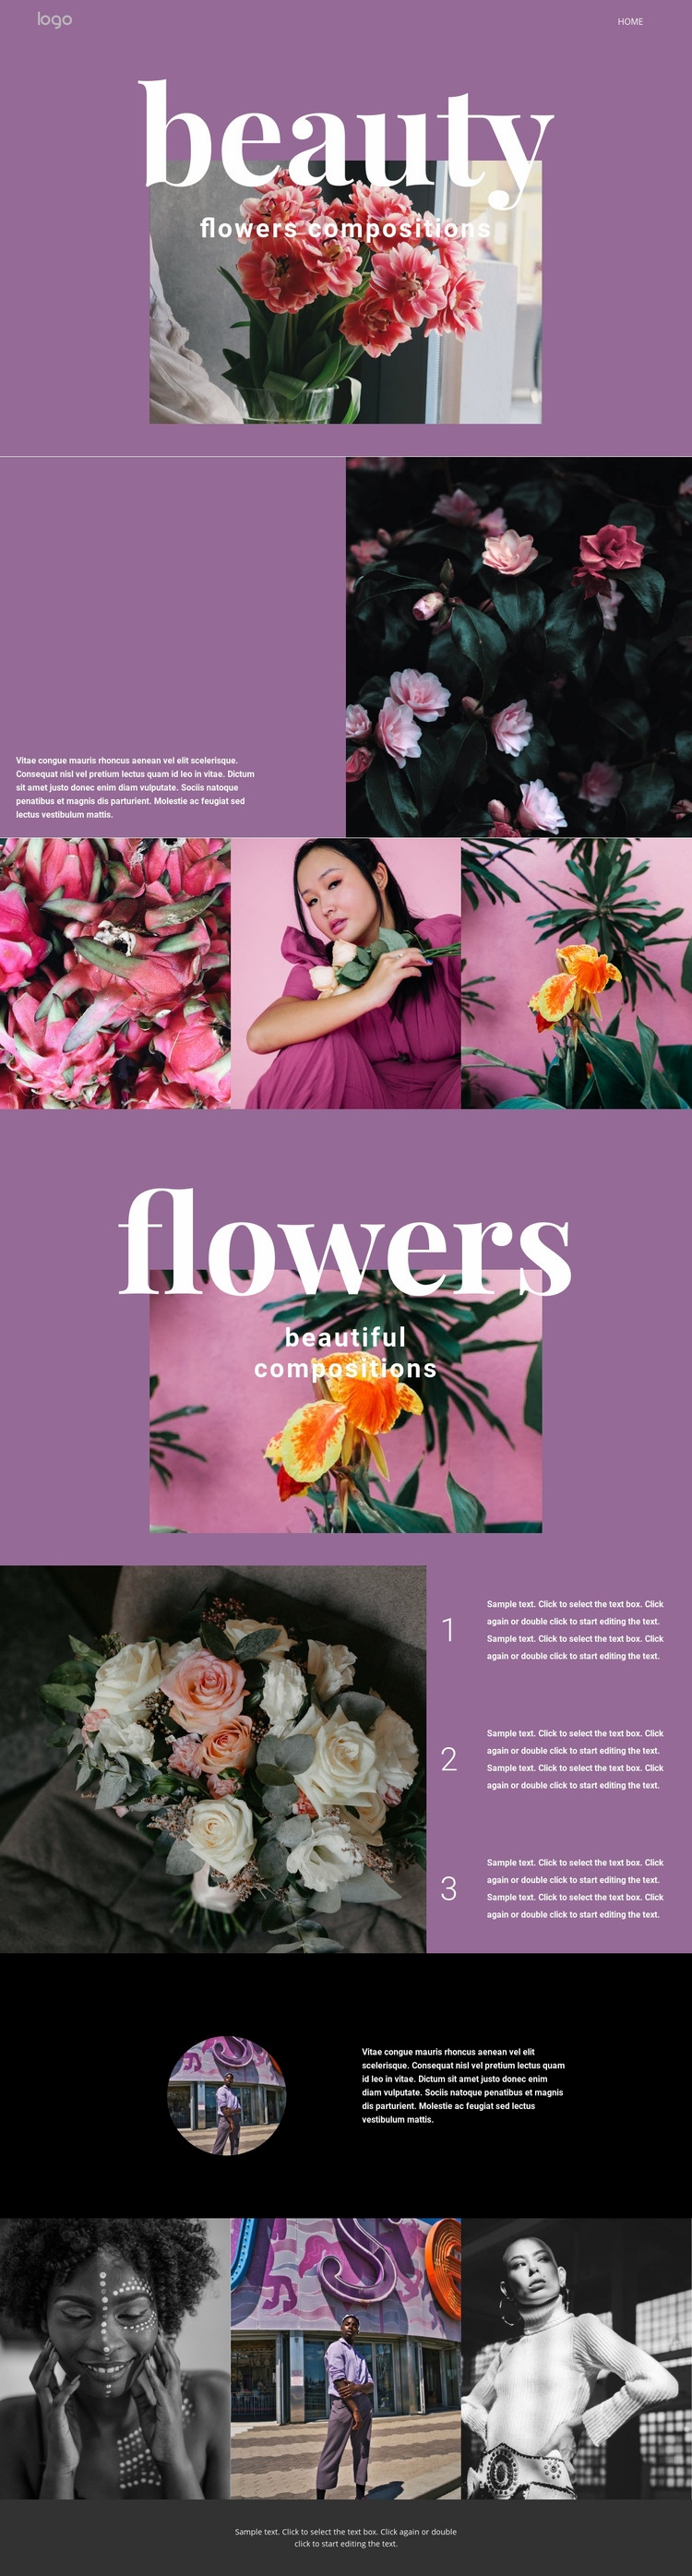 Flower salon Homepage Design